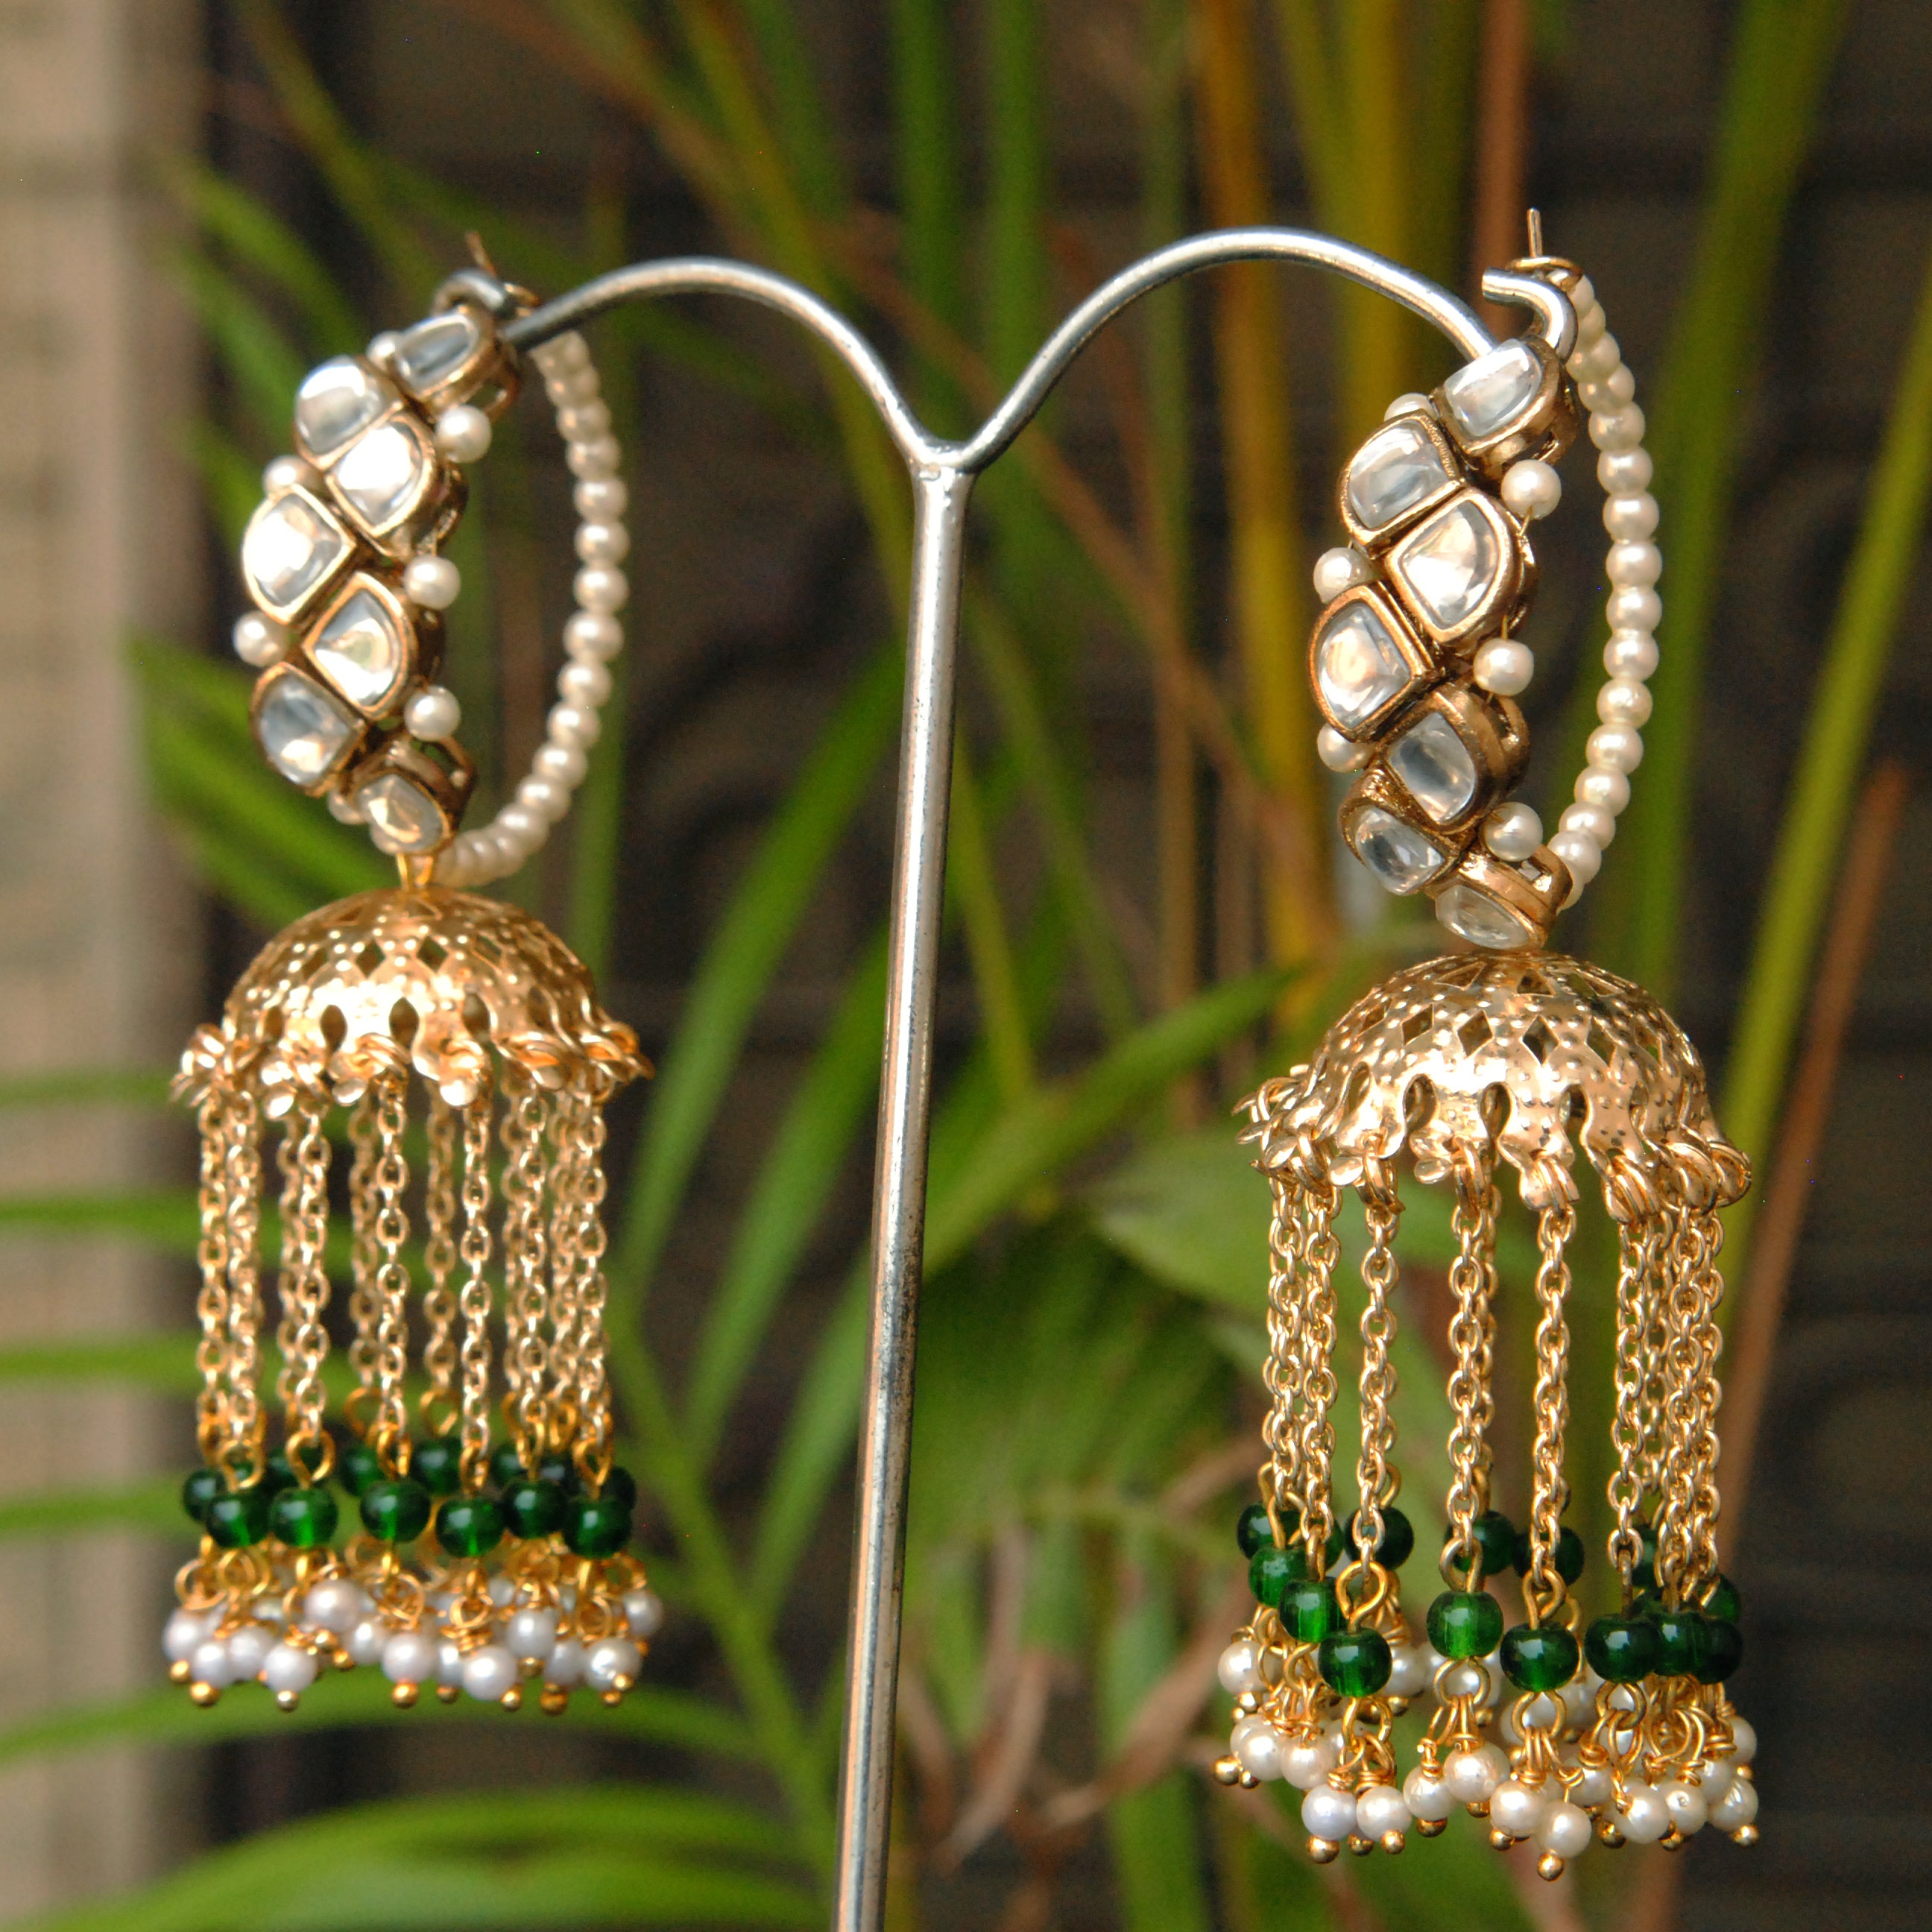 Buy Vintage Crystal Clip Earrings Vintage Crystal Earrings Vintage Earrings  Mid-century Clip Earrings Vintage Costume Jewelry Earrings Online in India  - Etsy